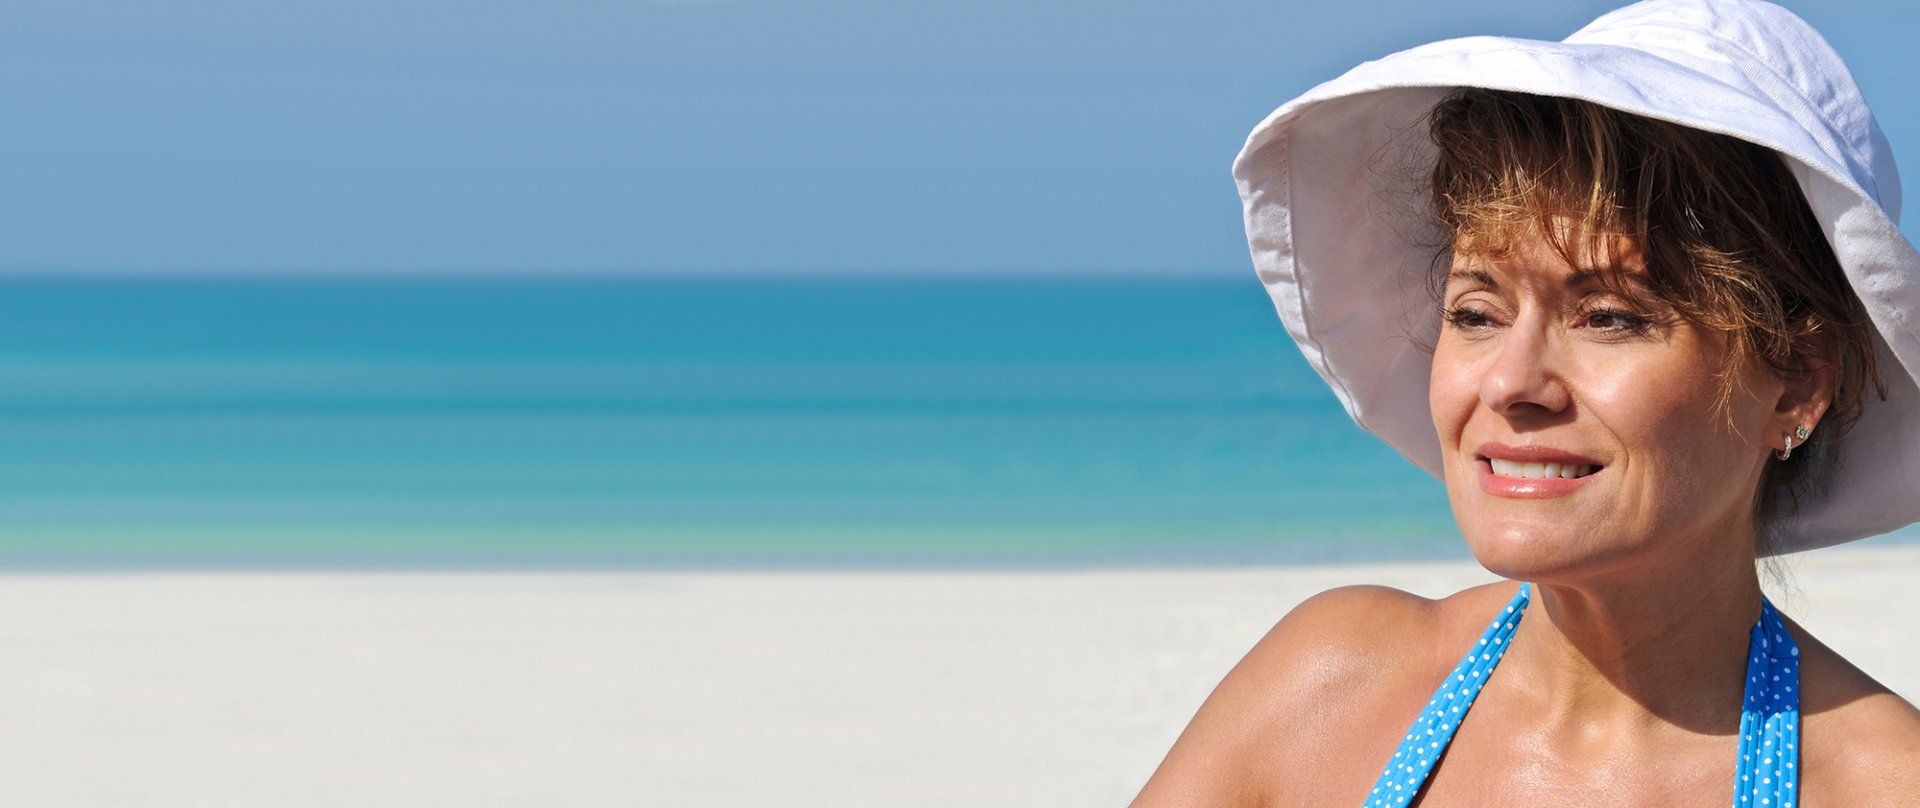 Sunsafe Skin Cancer Clinic Checklist